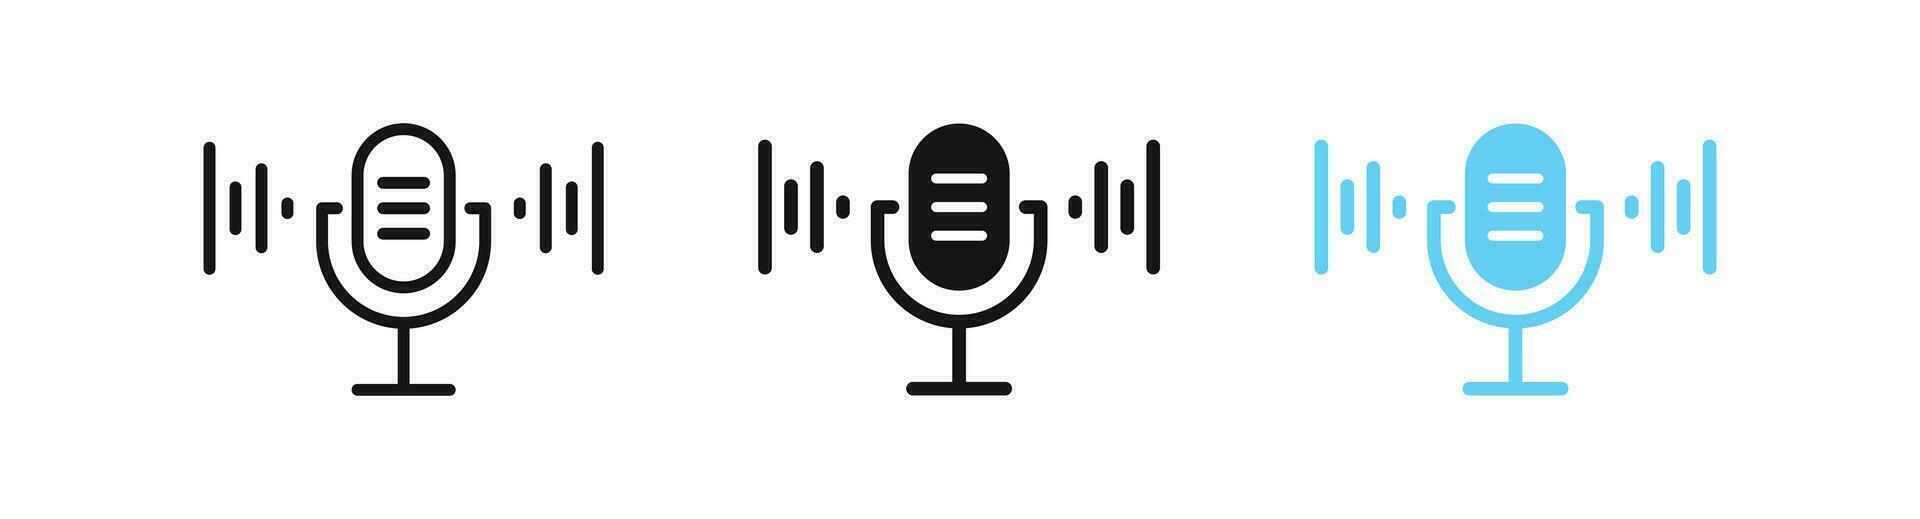 Mikrofon Welle Symbol. Klang Symbol. mic Rede Zeichen. Radio, Audio, Podcast Symbole. Lautsprecher, Vokal Symbole. Schwarz, Blau Farbe. Vektor unterzeichnen.